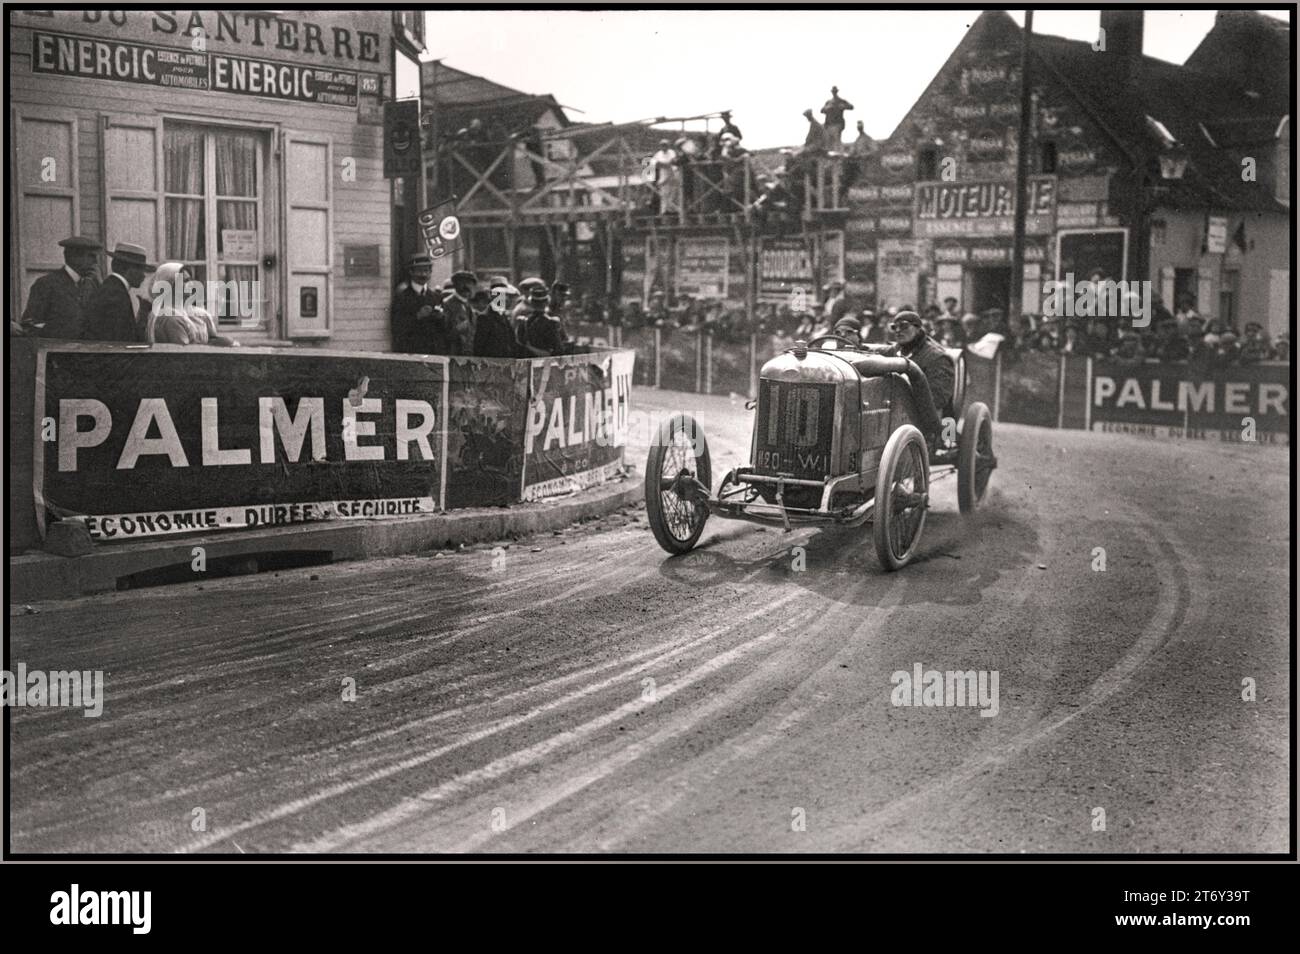 ALBERT GUYOT 1913 Gran Premio di Francia. Delage decise di partecipare a gare complete nel Gran Premio nel 1913 e presentò una nuova vettura da 6,2 litri, quattro valvole per cilindro, Type-Y GP, con cambi a cinque velocità, alberi a camme in testa e valvole demodromiche. Nel Grand Prix de l’Automobile Club de France 1913 ad Amiens, il Delage di Albert Guyot con il meccanico Achille Seeuws, si dimostrò il più veloce del campo, lottando per il comando con la Peugeot di Georges Boillot, fino a essere messo da parte da una foratura, alla fine finendo in un deludente quinto posto, davanti alla vettura gemella di Bablot. 1913, Foto Stock